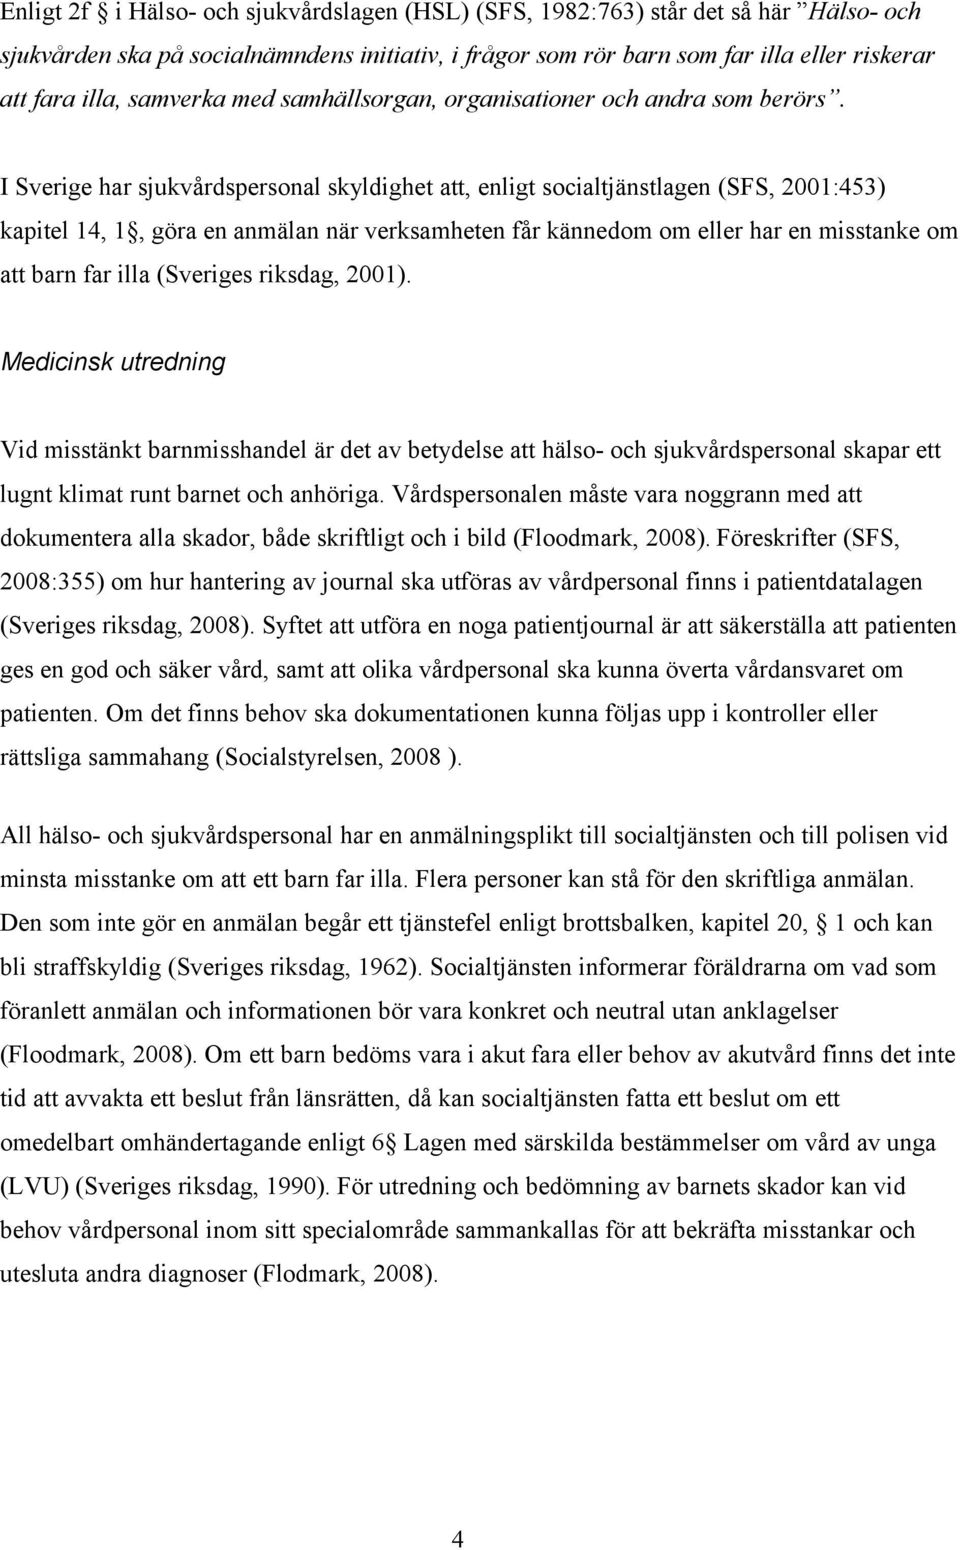 I Sverige har sjukvårdspersonal skyldighet att, enligt socialtjänstlagen (SFS, 2001:453) kapitel 14, 1, göra en anmälan när verksamheten får kännedom om eller har en misstanke om att barn far illa